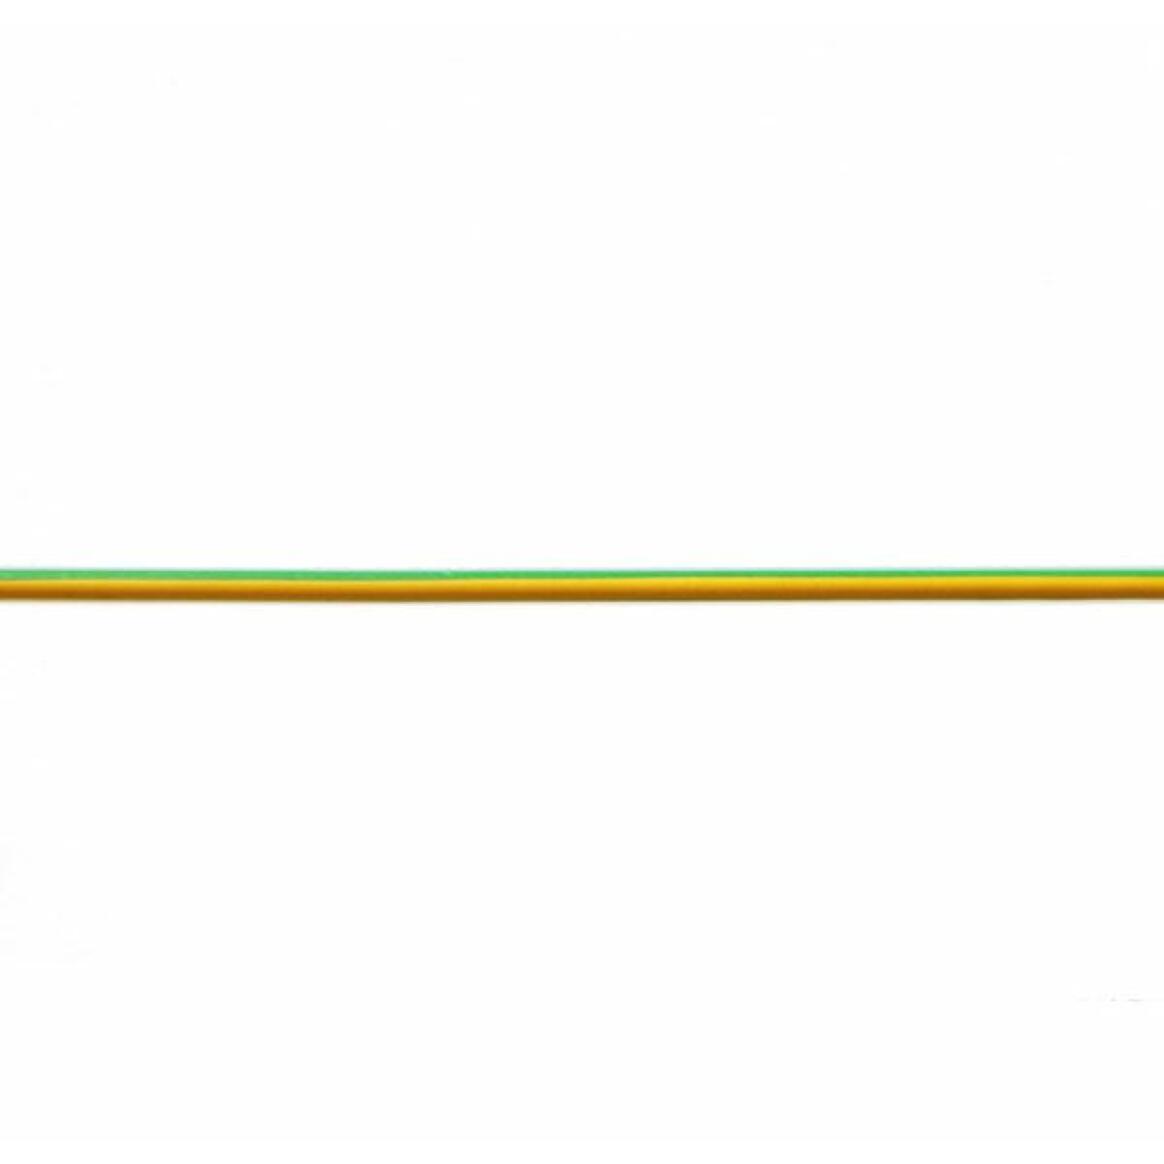 Câble électrique monoconducteur en pvc, terre jaune/vert main product image